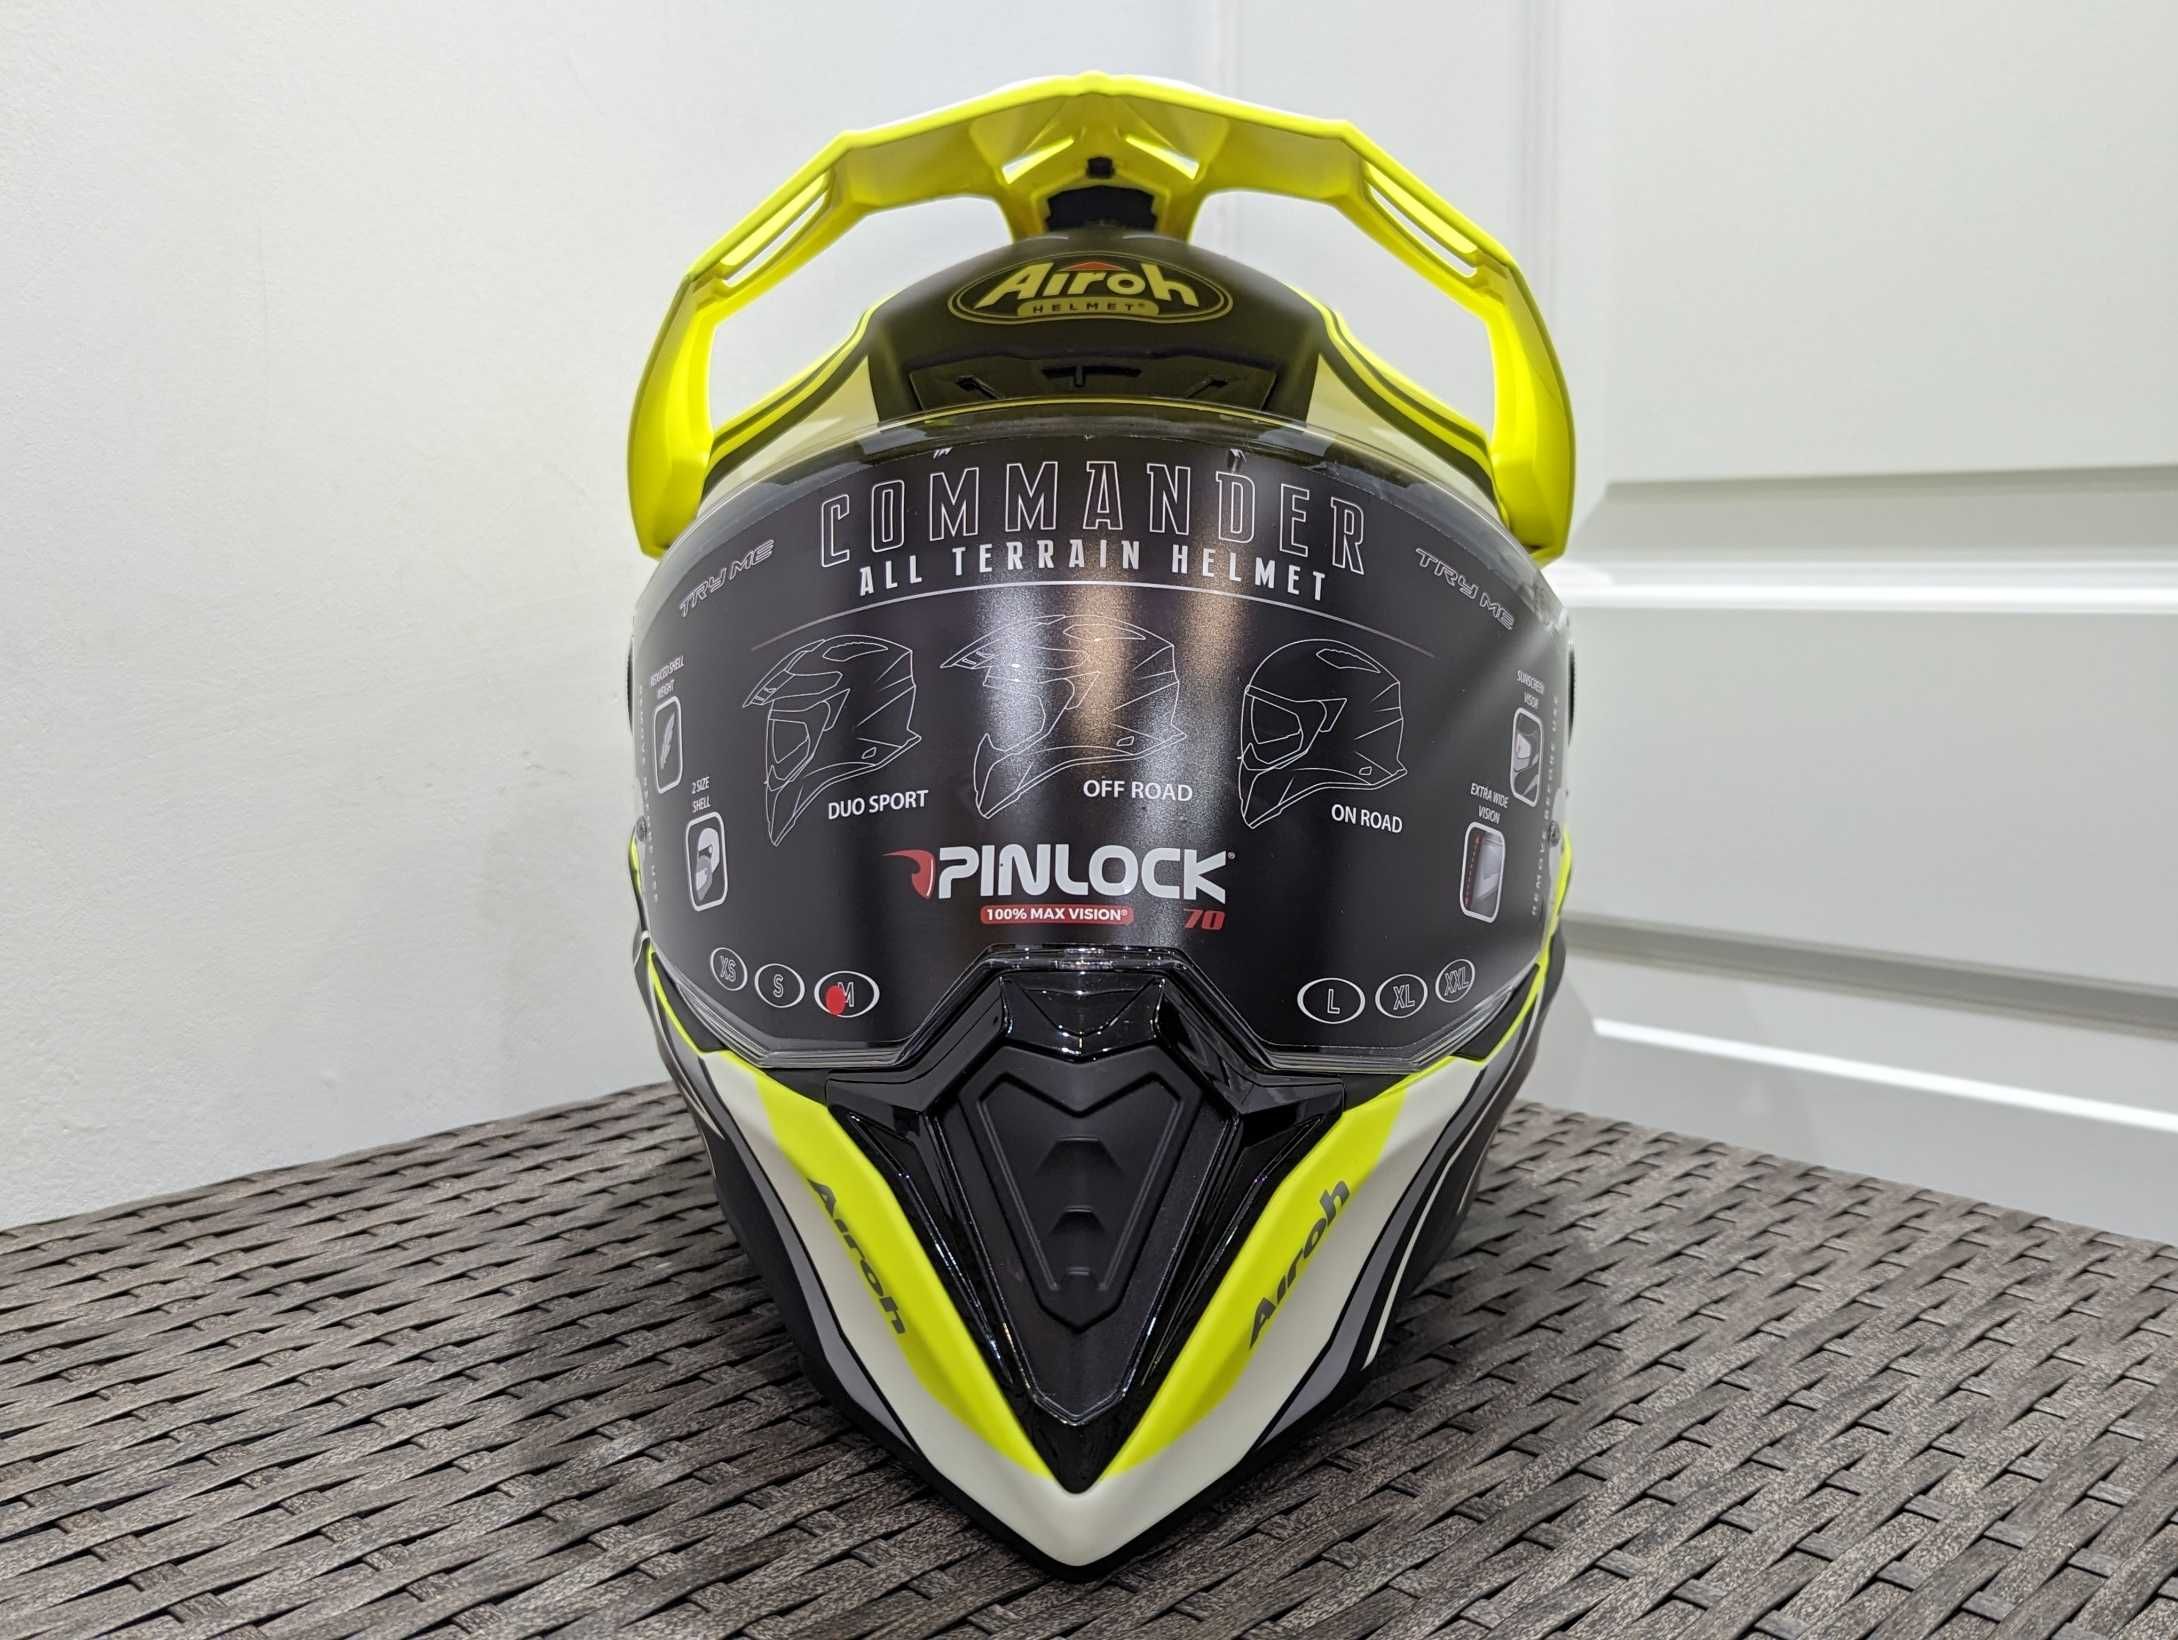 Casca moto Airoh Commander, Motocross/Dualsport, marime M - Nou